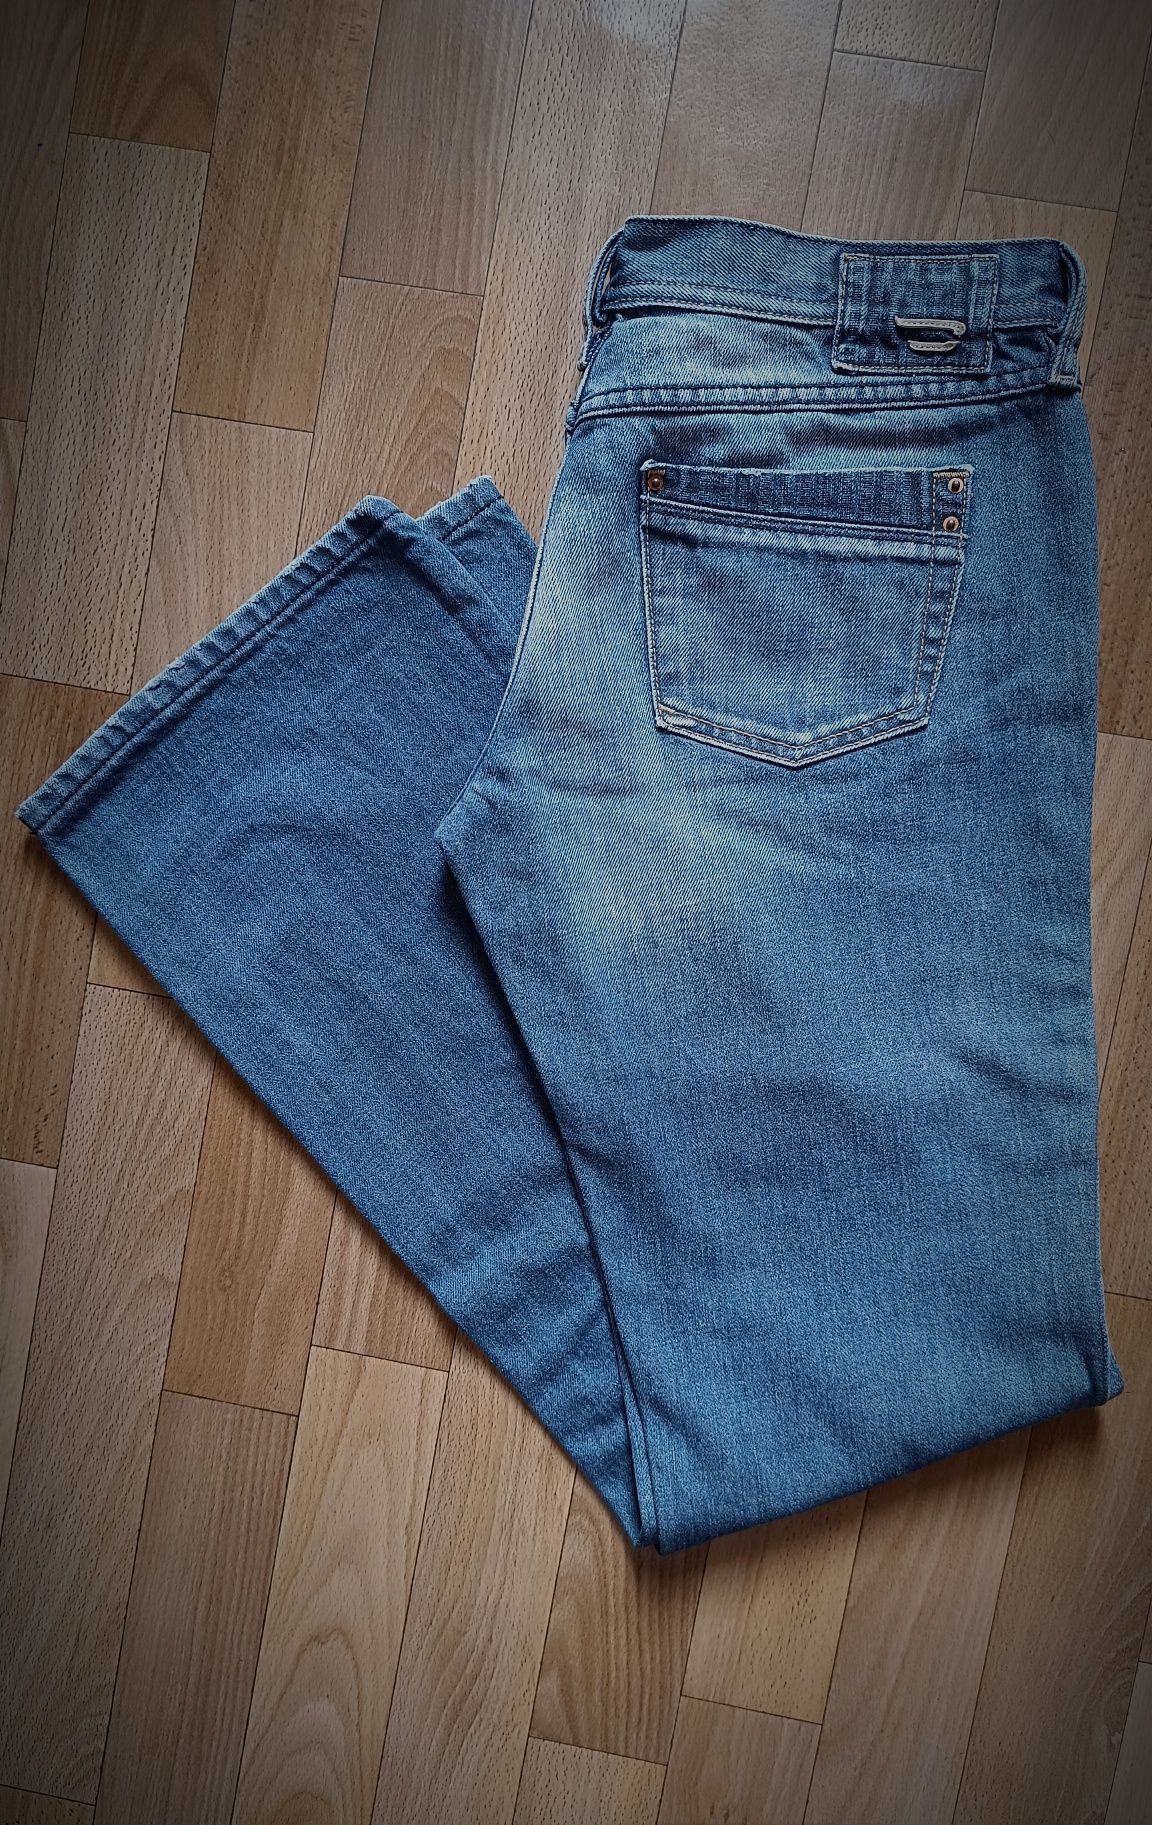 Женские джинсы Diesel reggins, оригинал Италия.